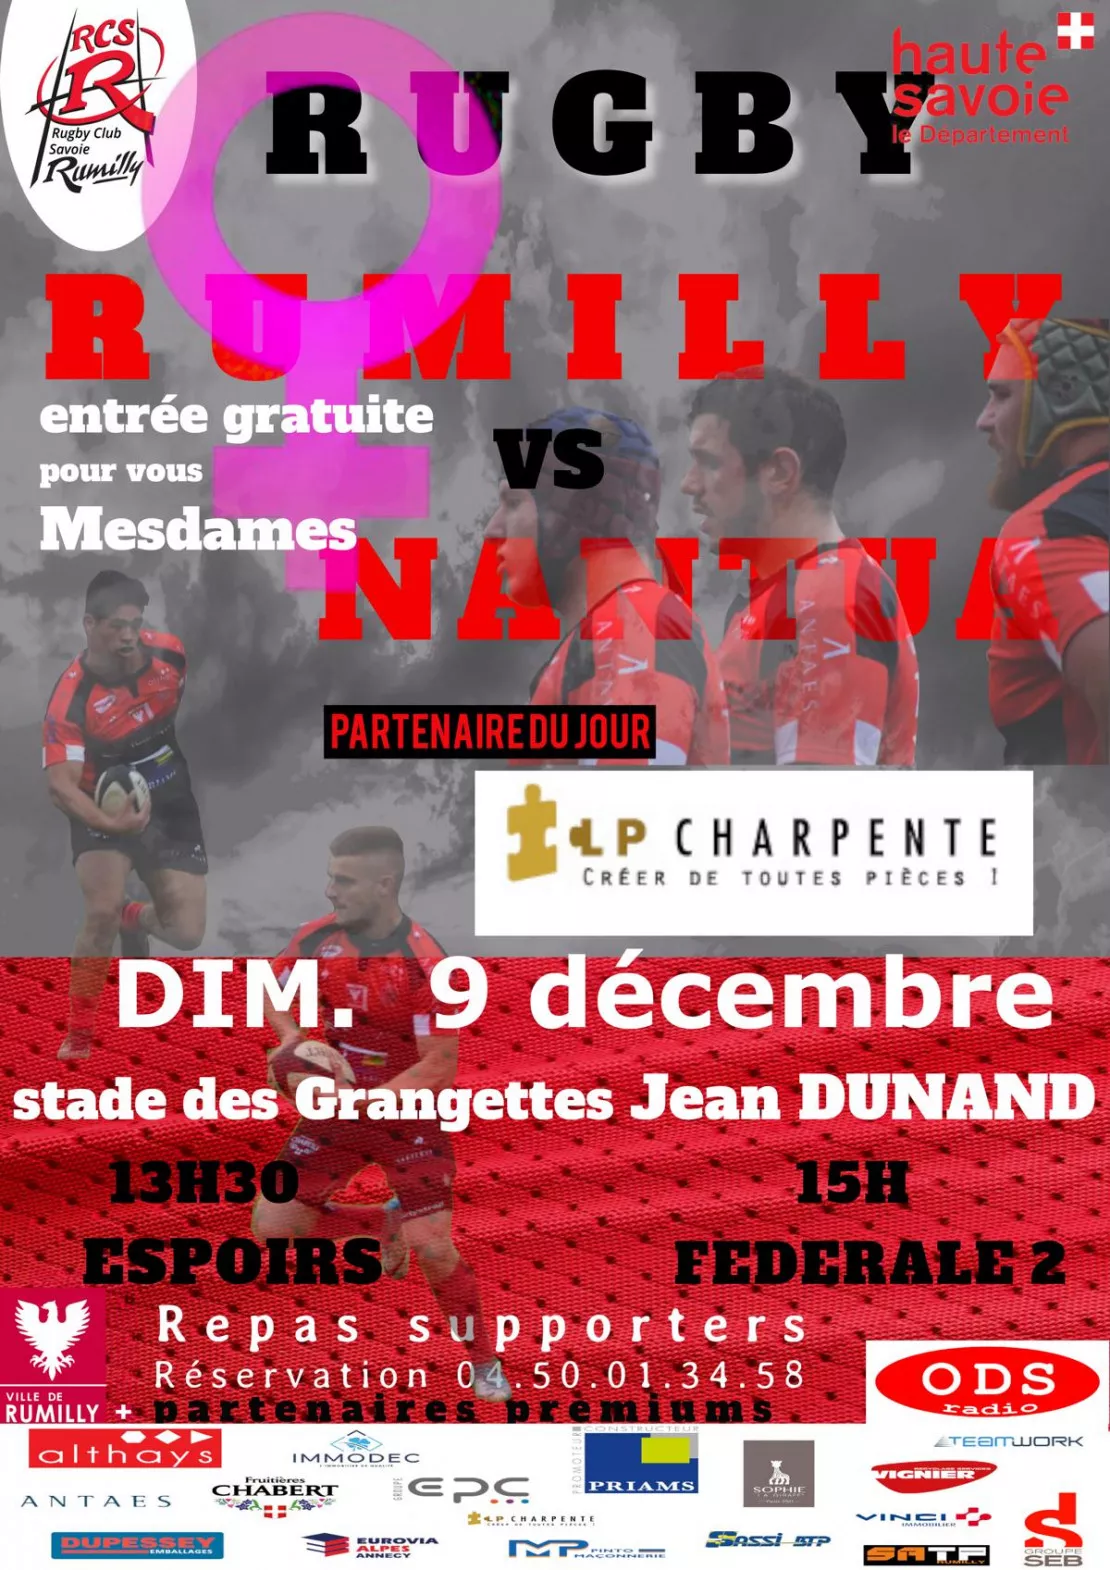 PARTENAIRE - Match du Rugby club Savoie Rumilly